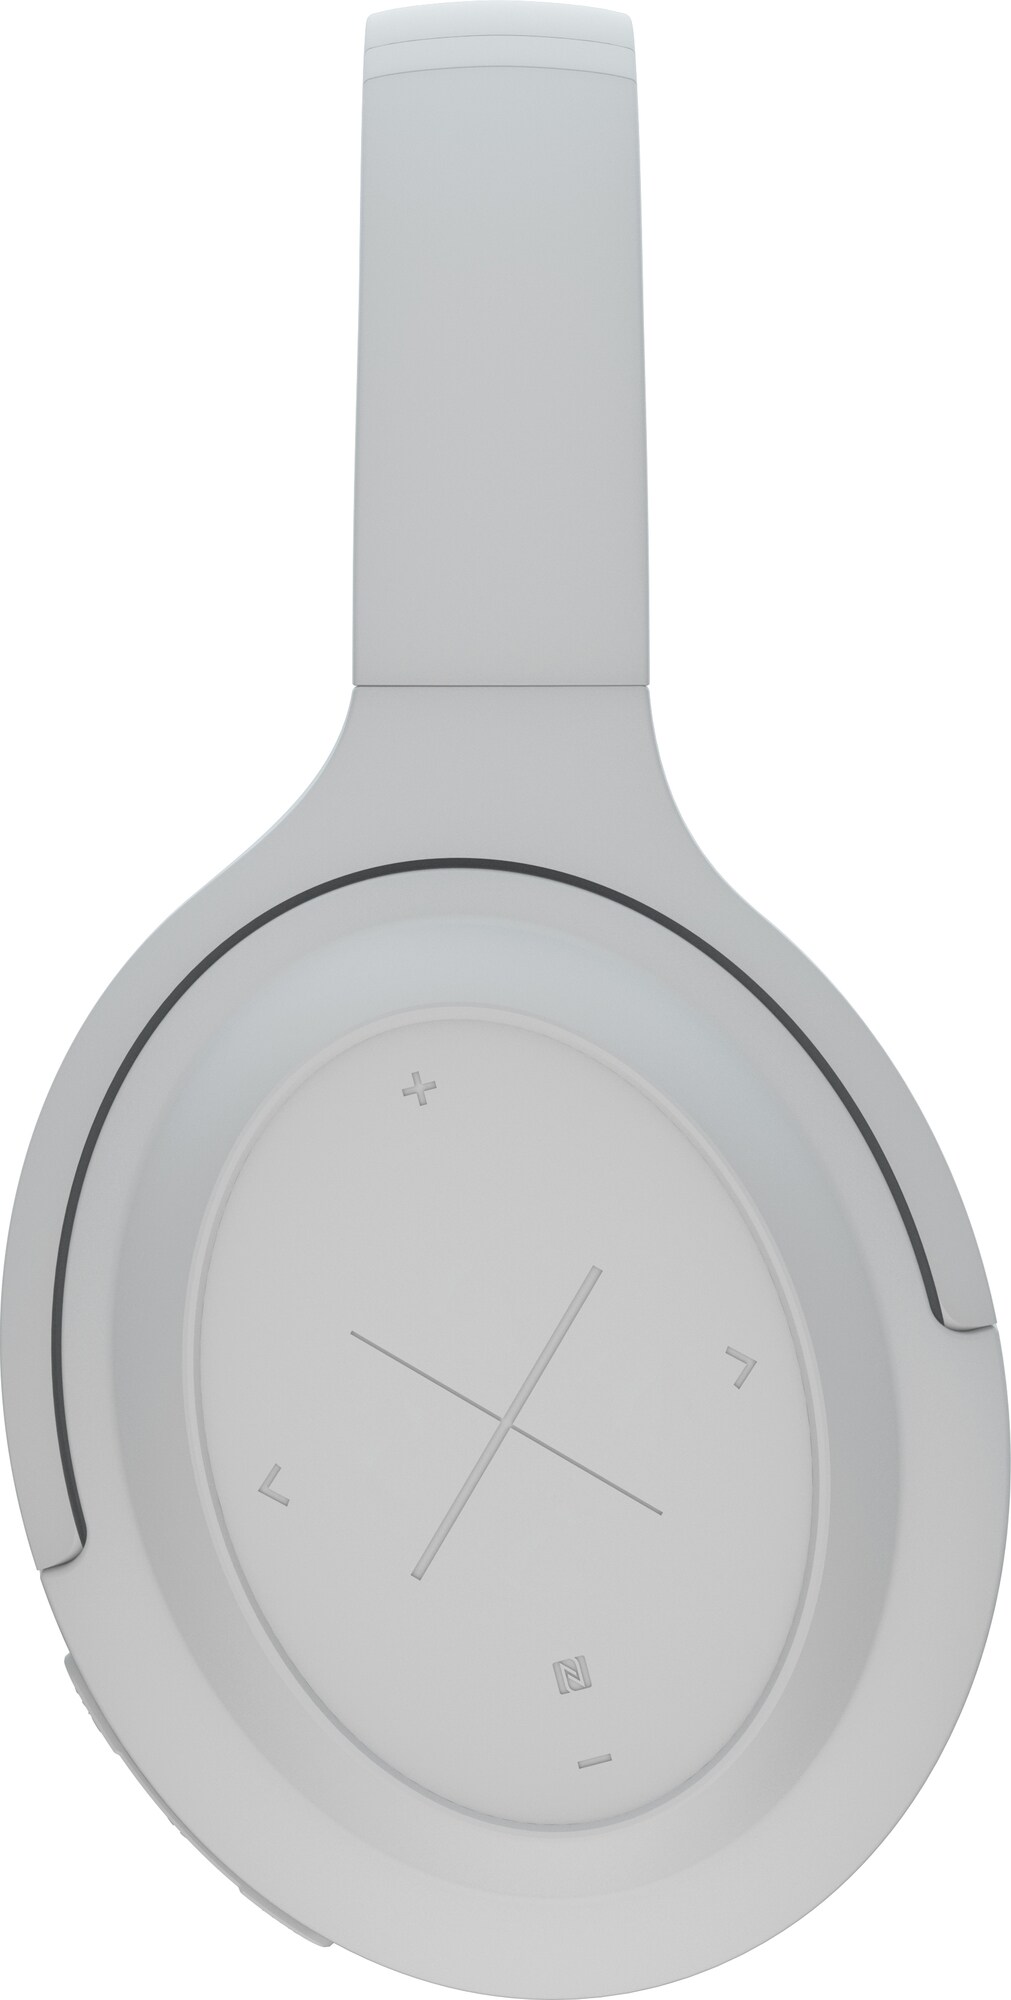 Kygo A11/800 trådløse around-ear hodetelefoner (hvit) - Hodetelefoner -  Elkjøp